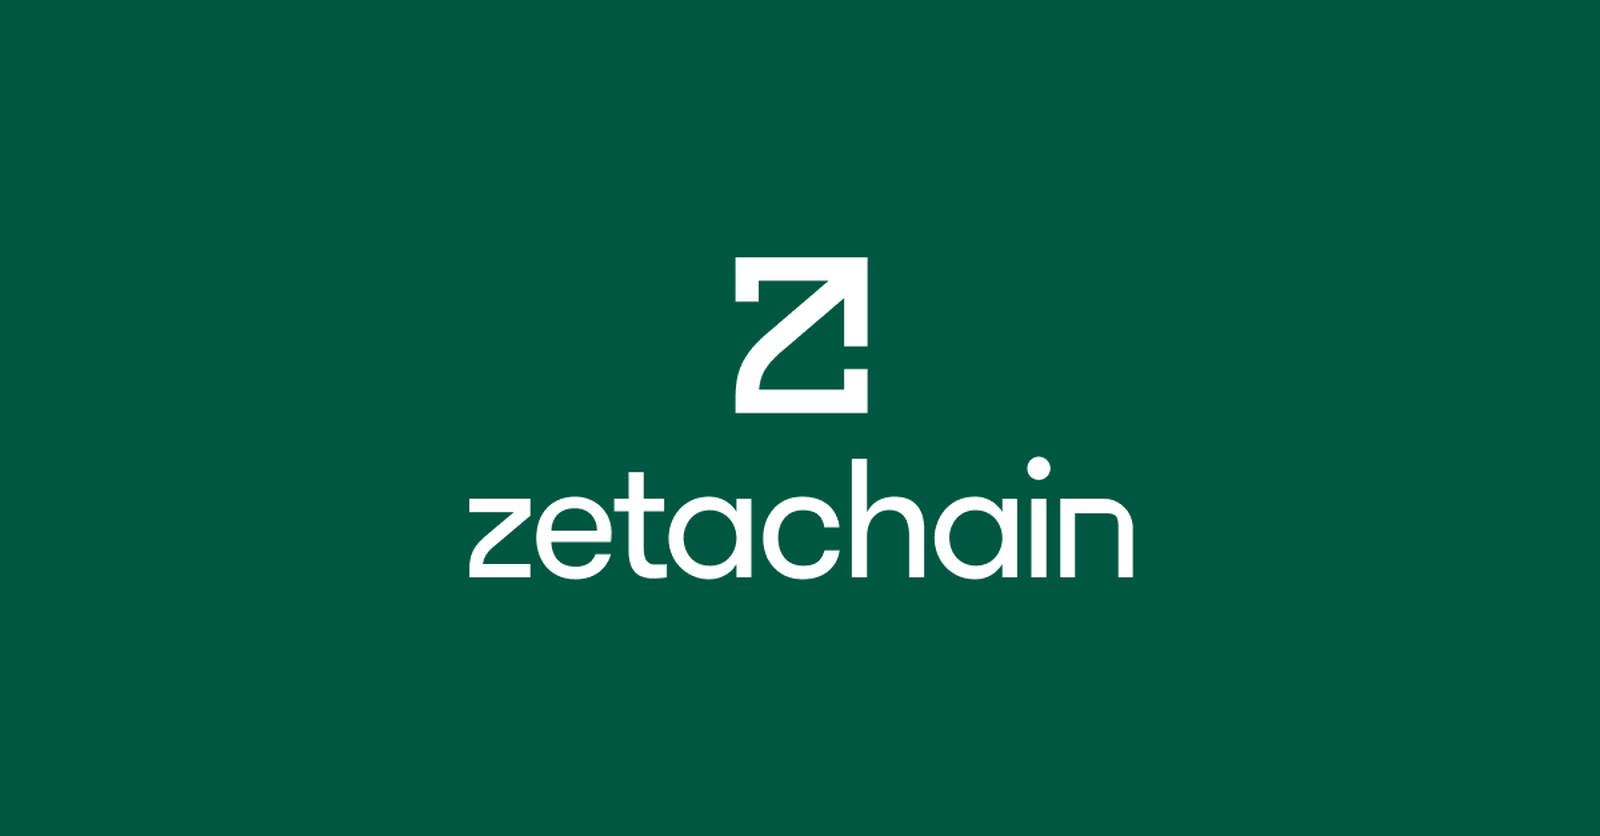 ZetaChain - kampania mainnet pod airdrop